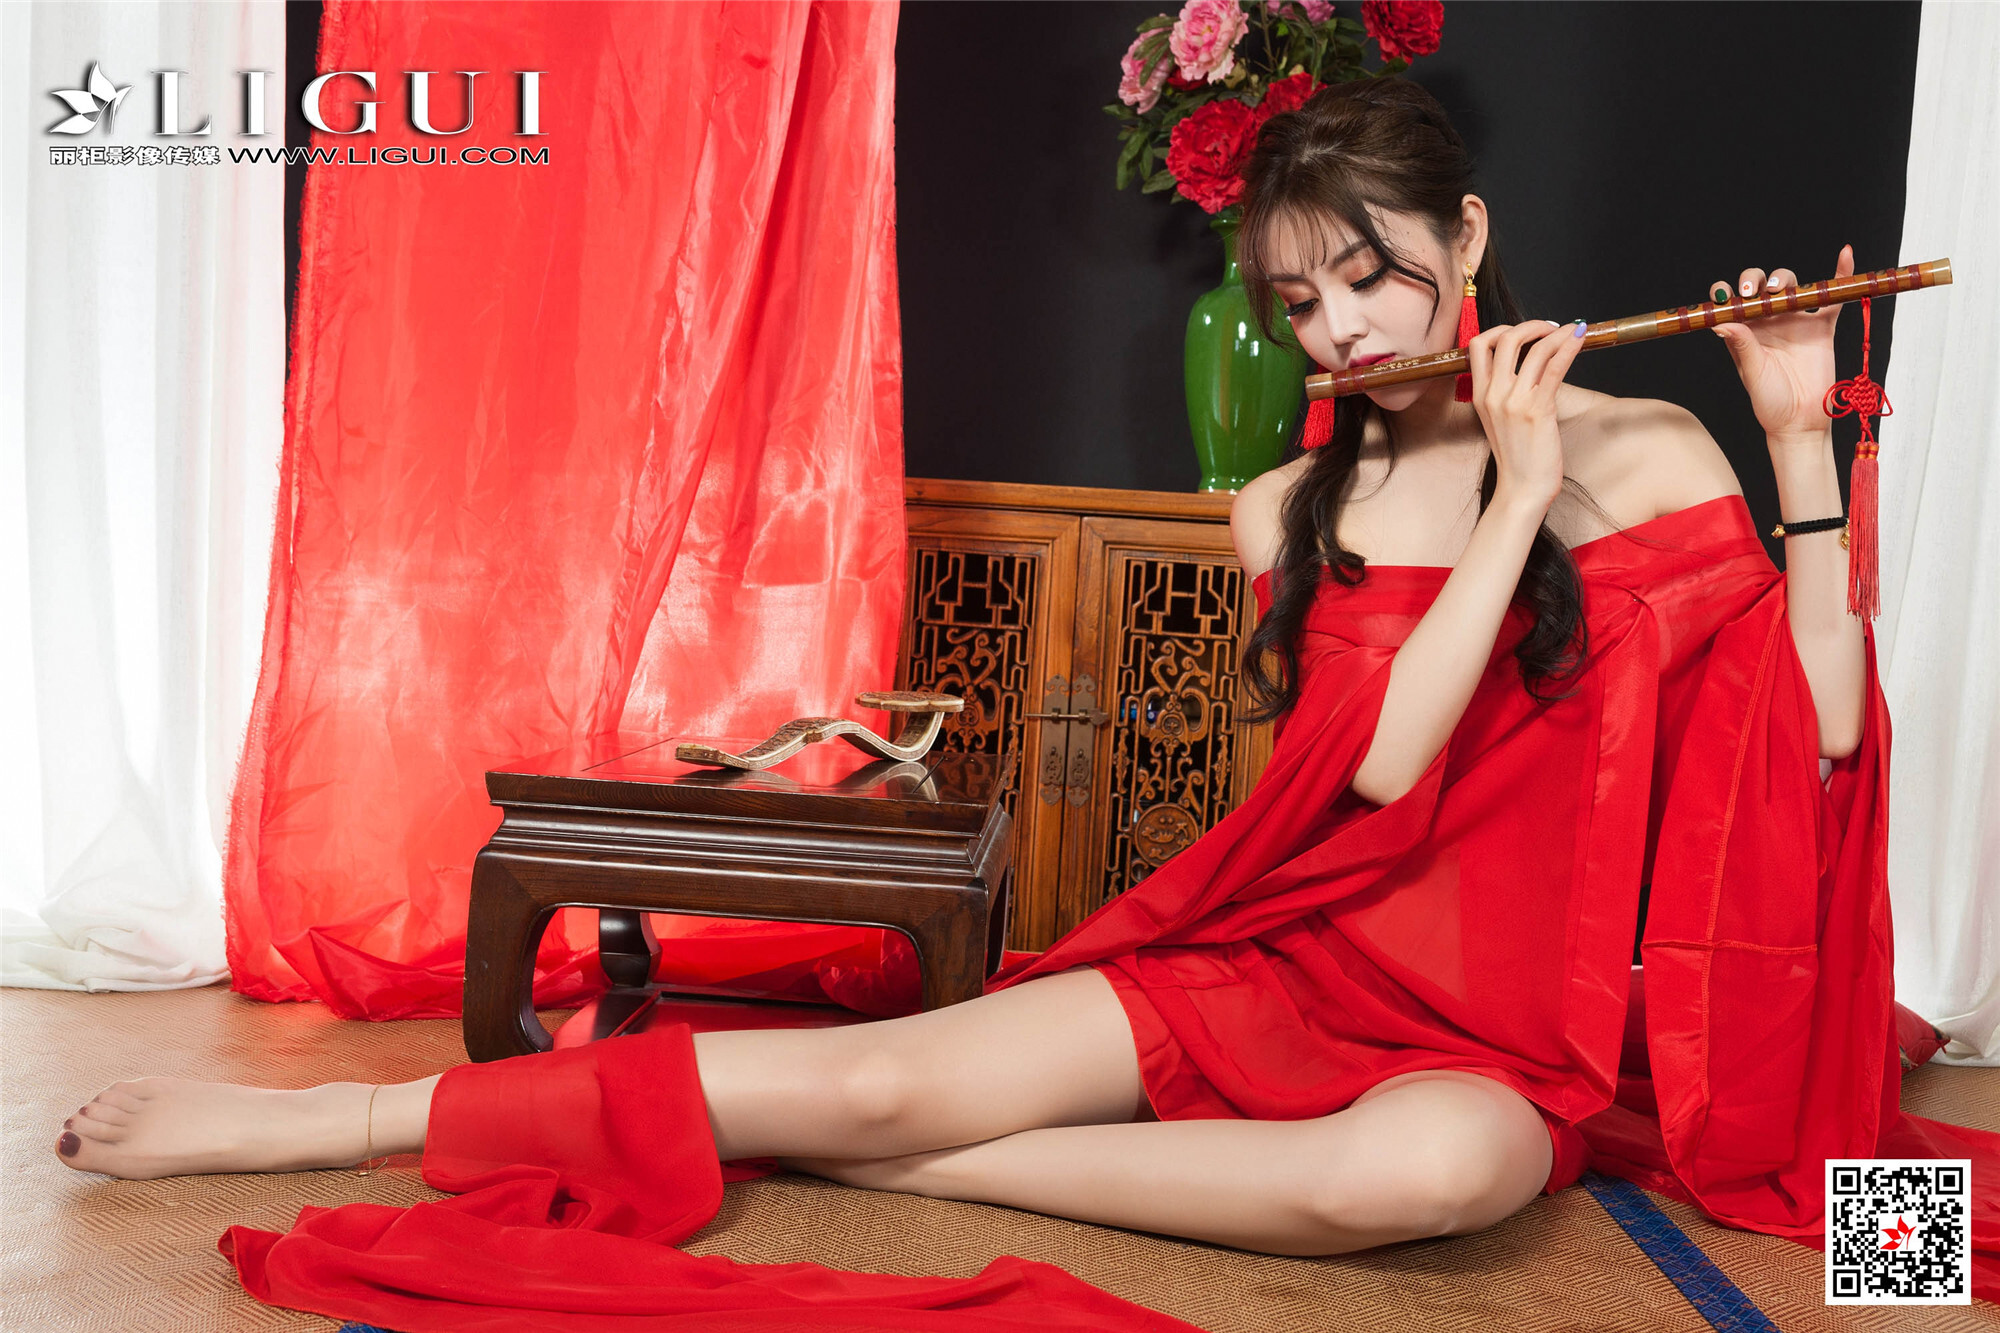 Li Gui Li cabinet 2020.01.31 network beauty model Liang er